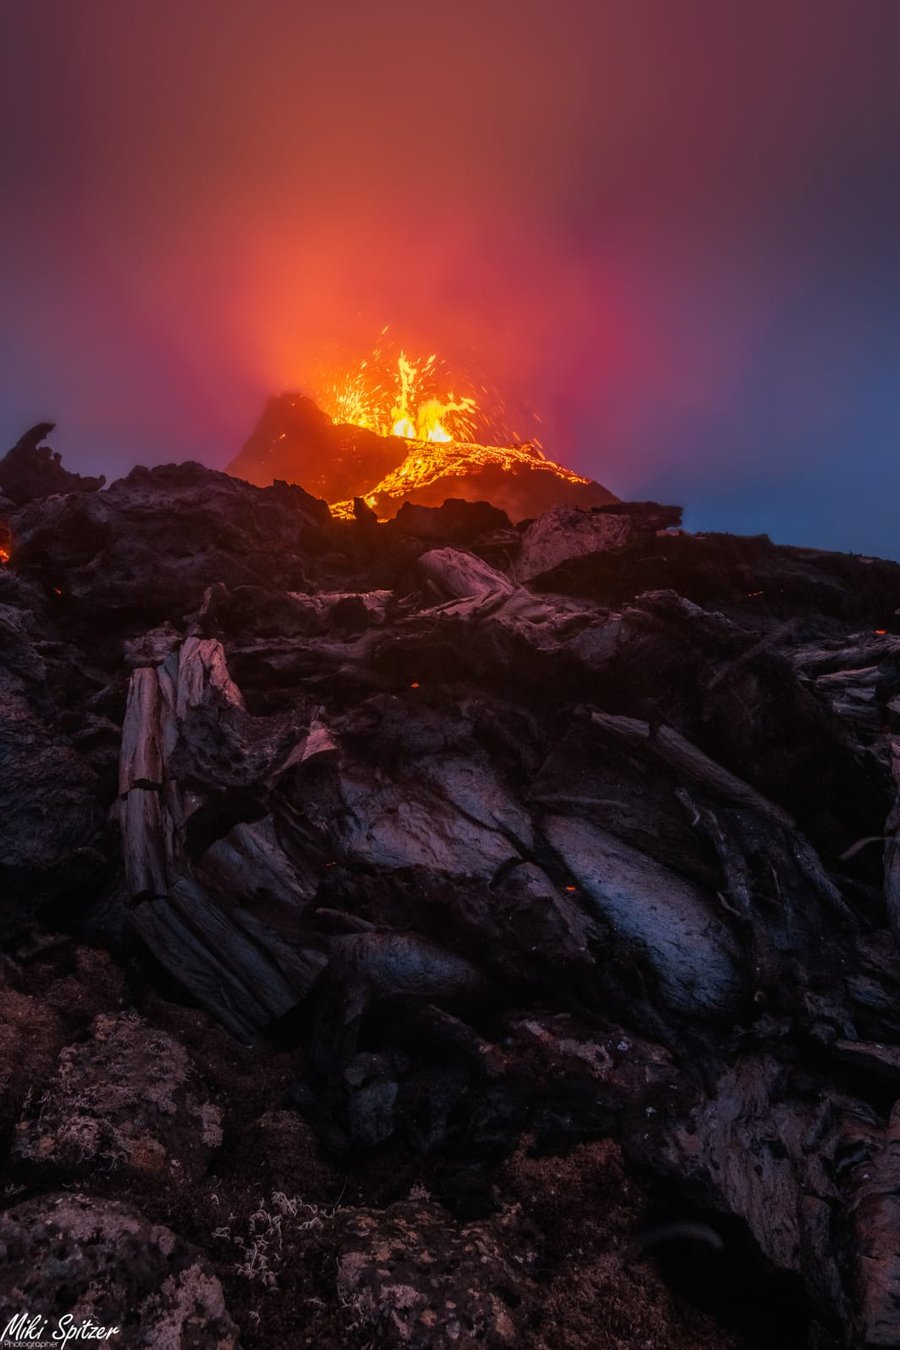 מרהיב: מיקי שפיצר צילם הר געש - מקרוב